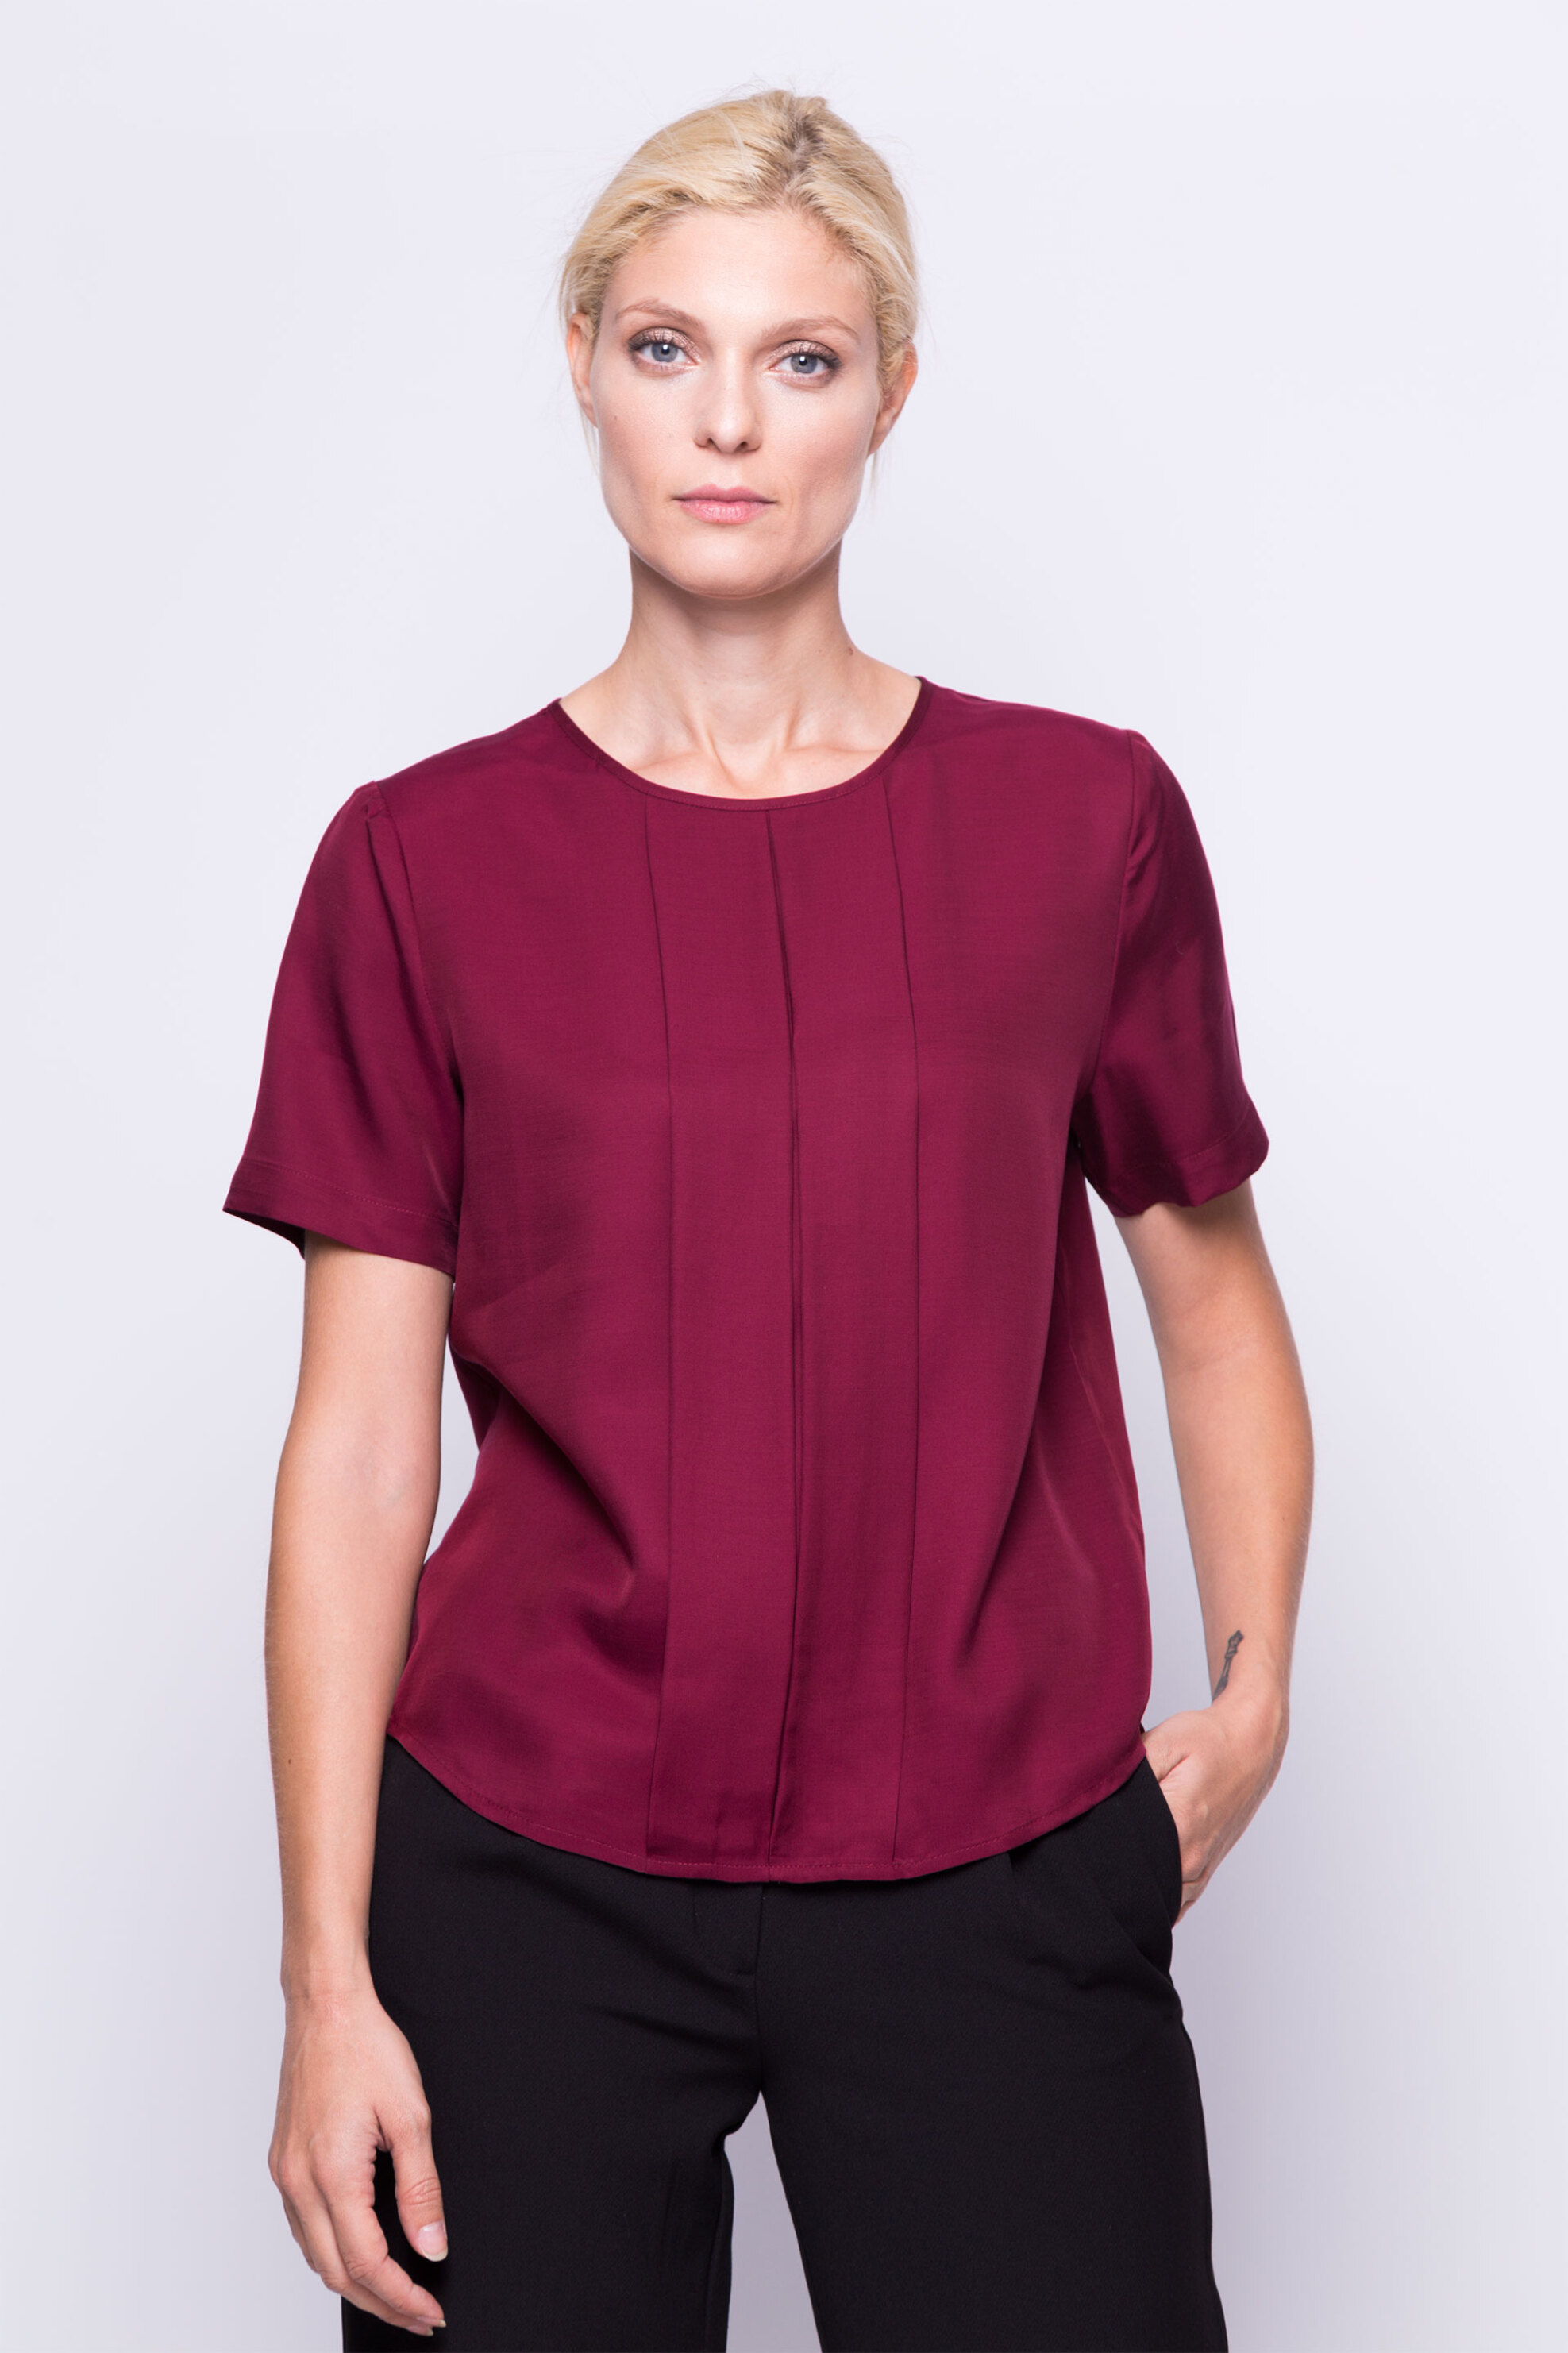 Γυναίκα > ΡΟΥΧΑ > Tops > T-Shirts Γυναικεία μπλούζα Gant - 4301002 Μπορντό